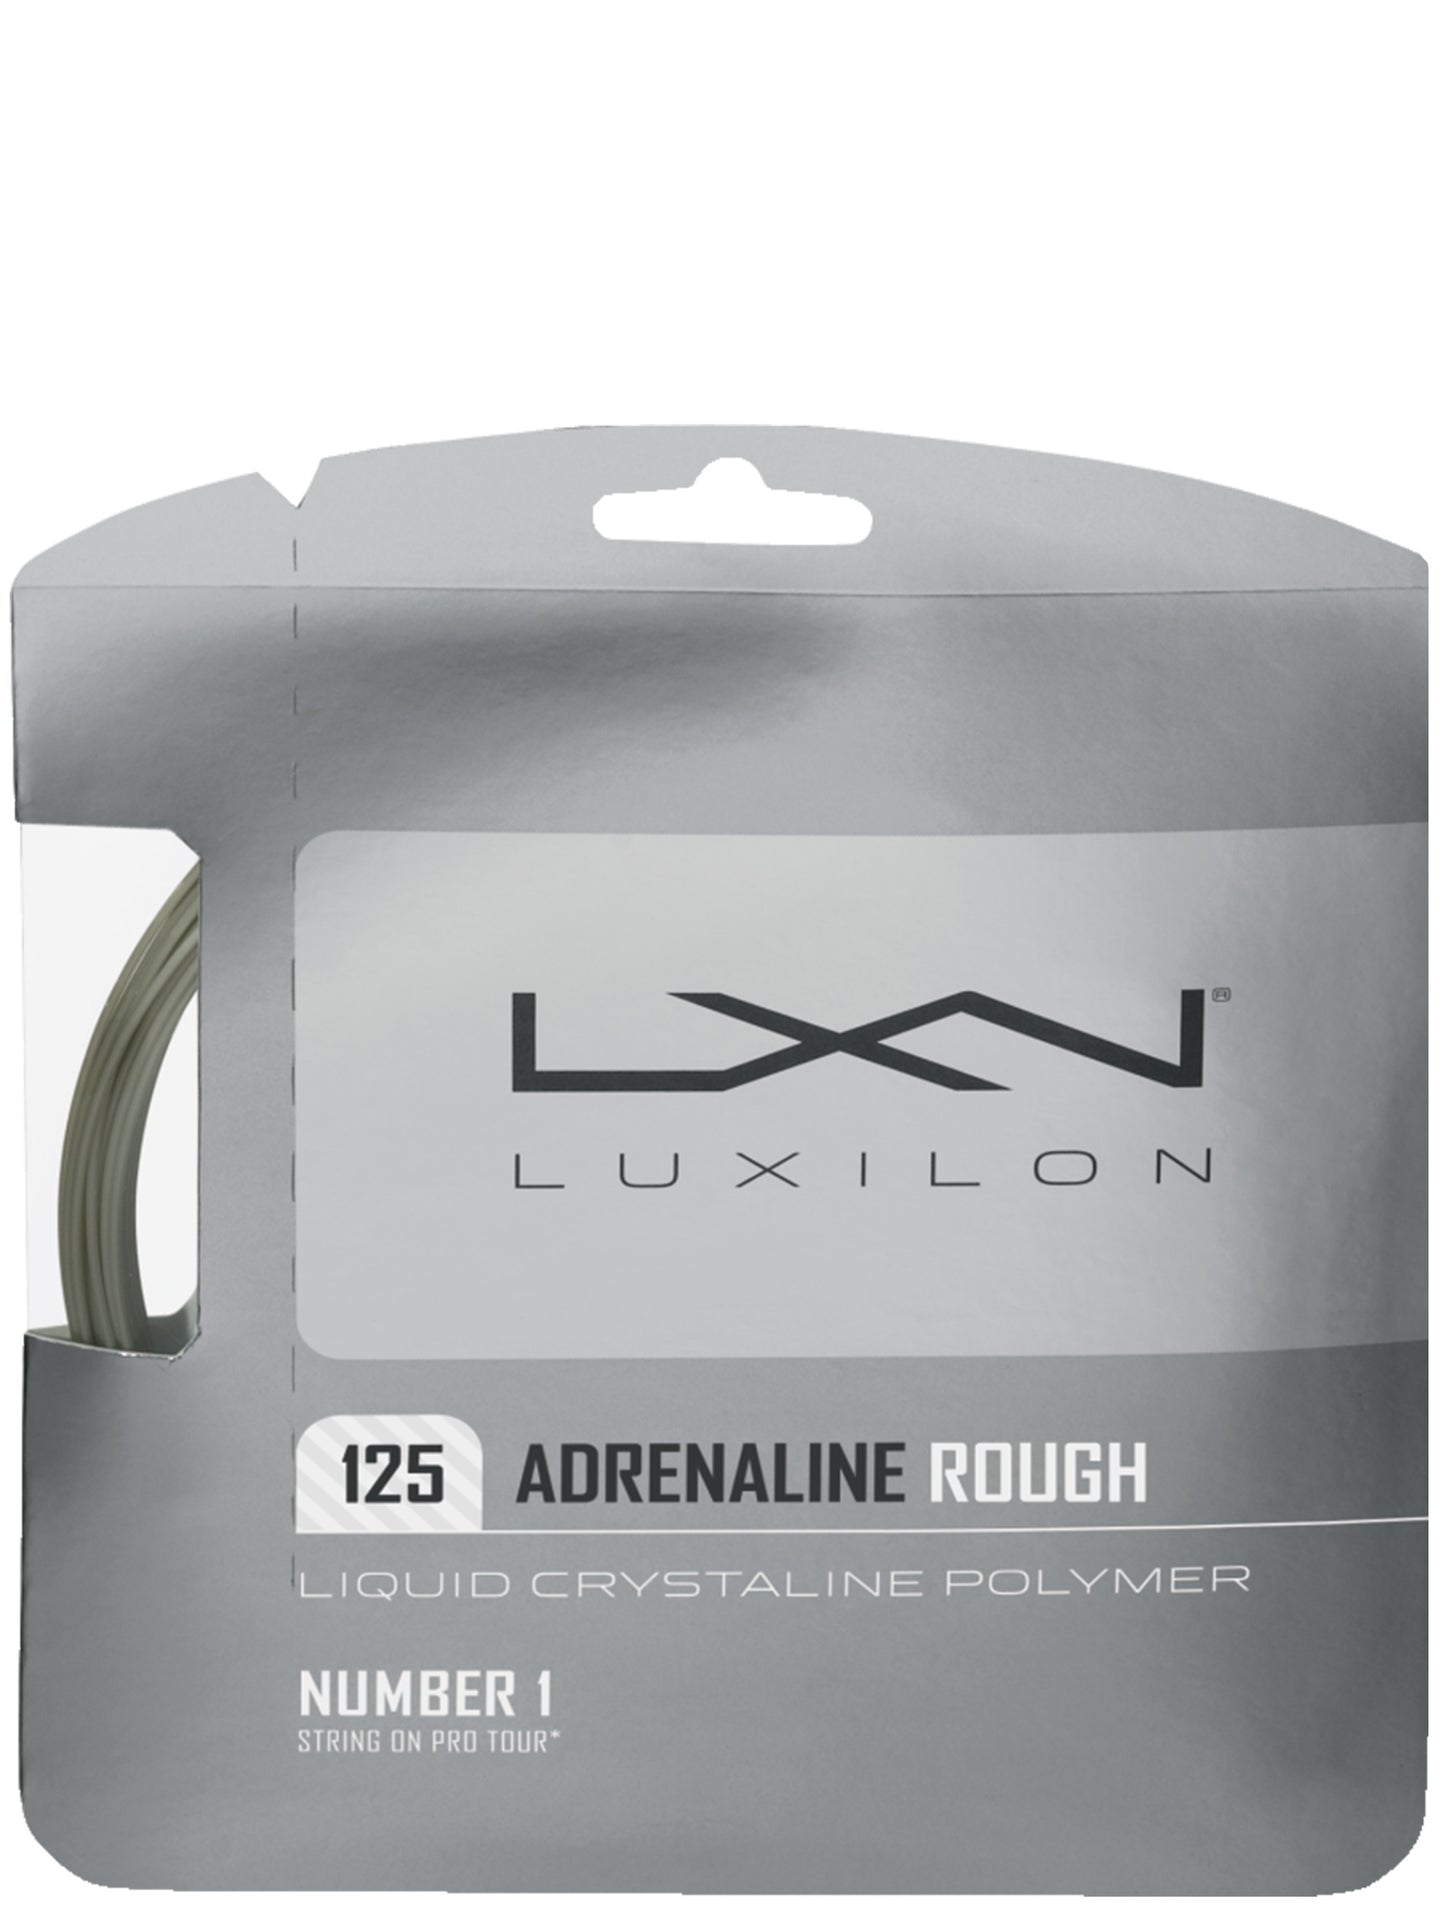 Luxilon Adrenaline Rough LCP 125/16 Platinum